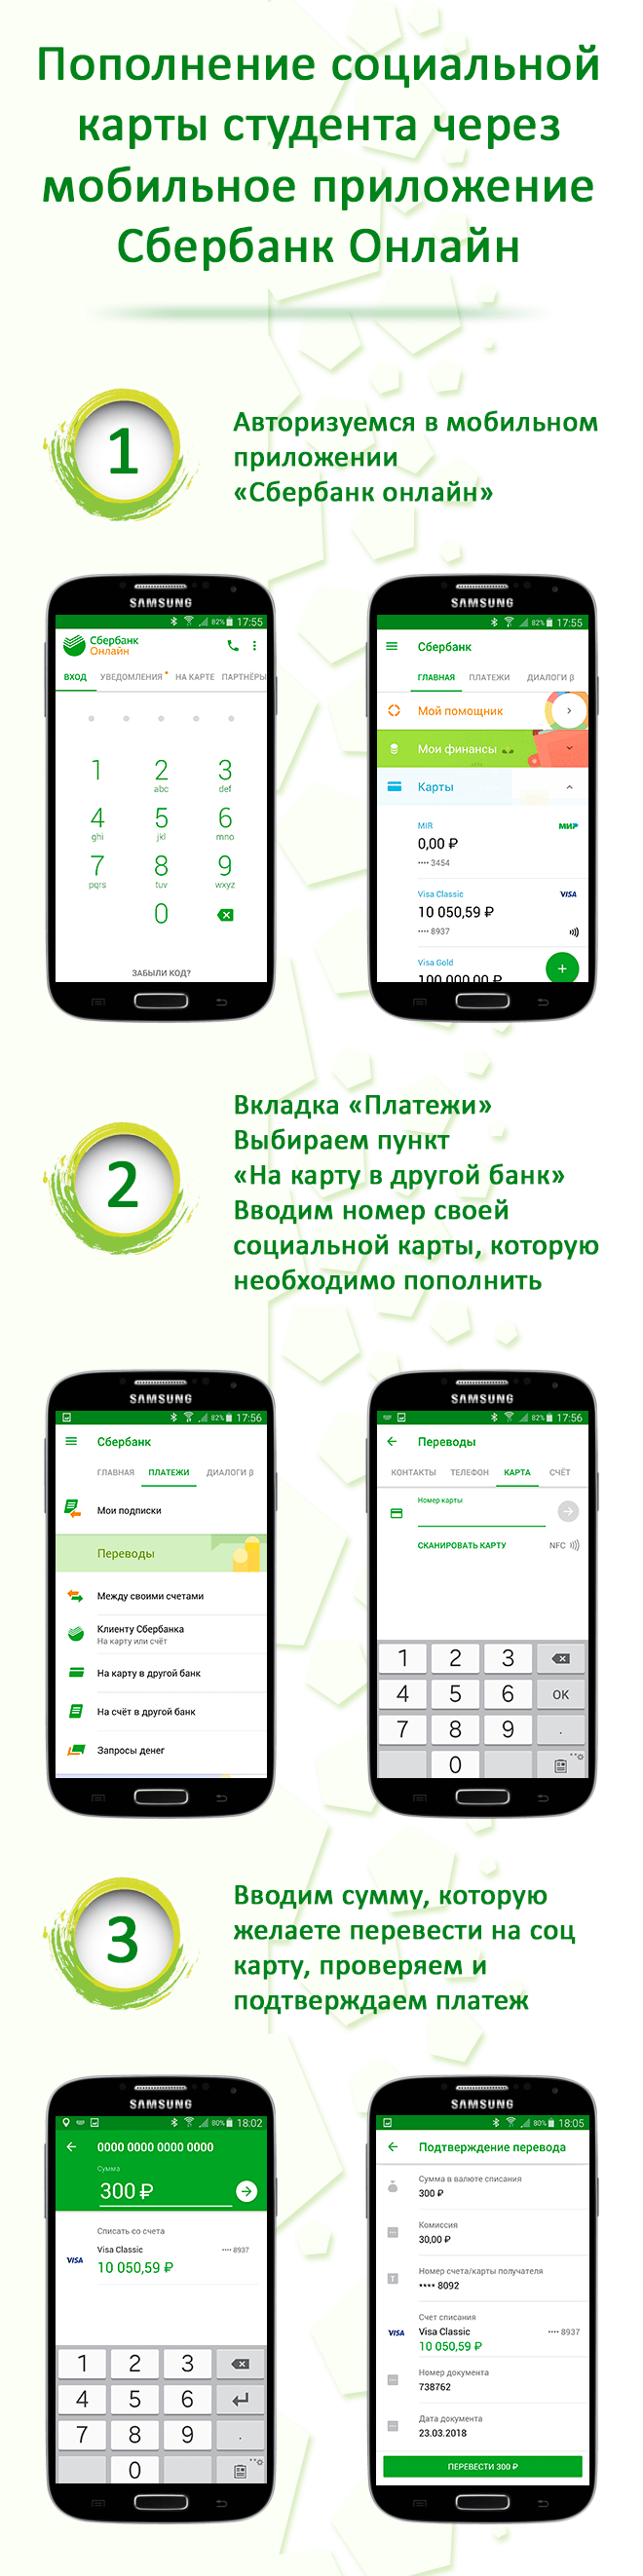 Пополнение социальной карты через приложение сбербанк Android